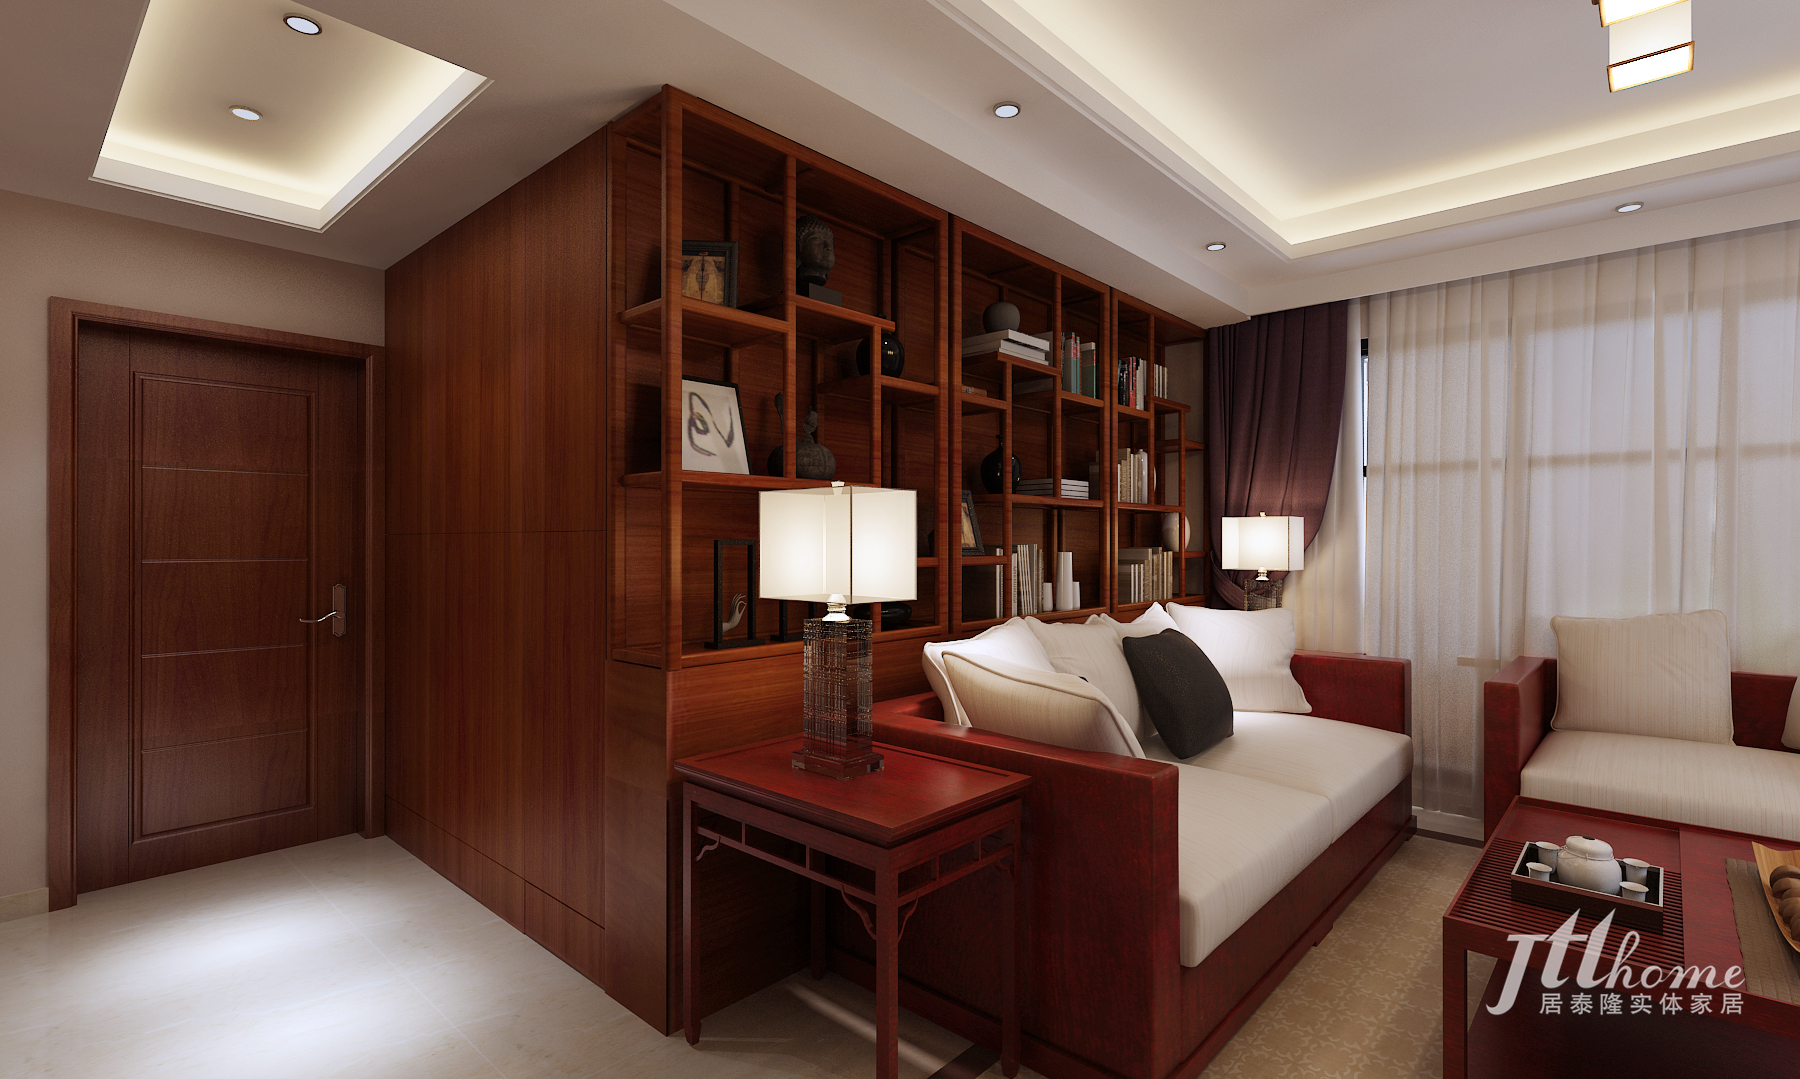 新中式 三居 宜居 舒适 典雅 客厅图片来自居泰隆深圳在京基御景影响新中式三居室的分享